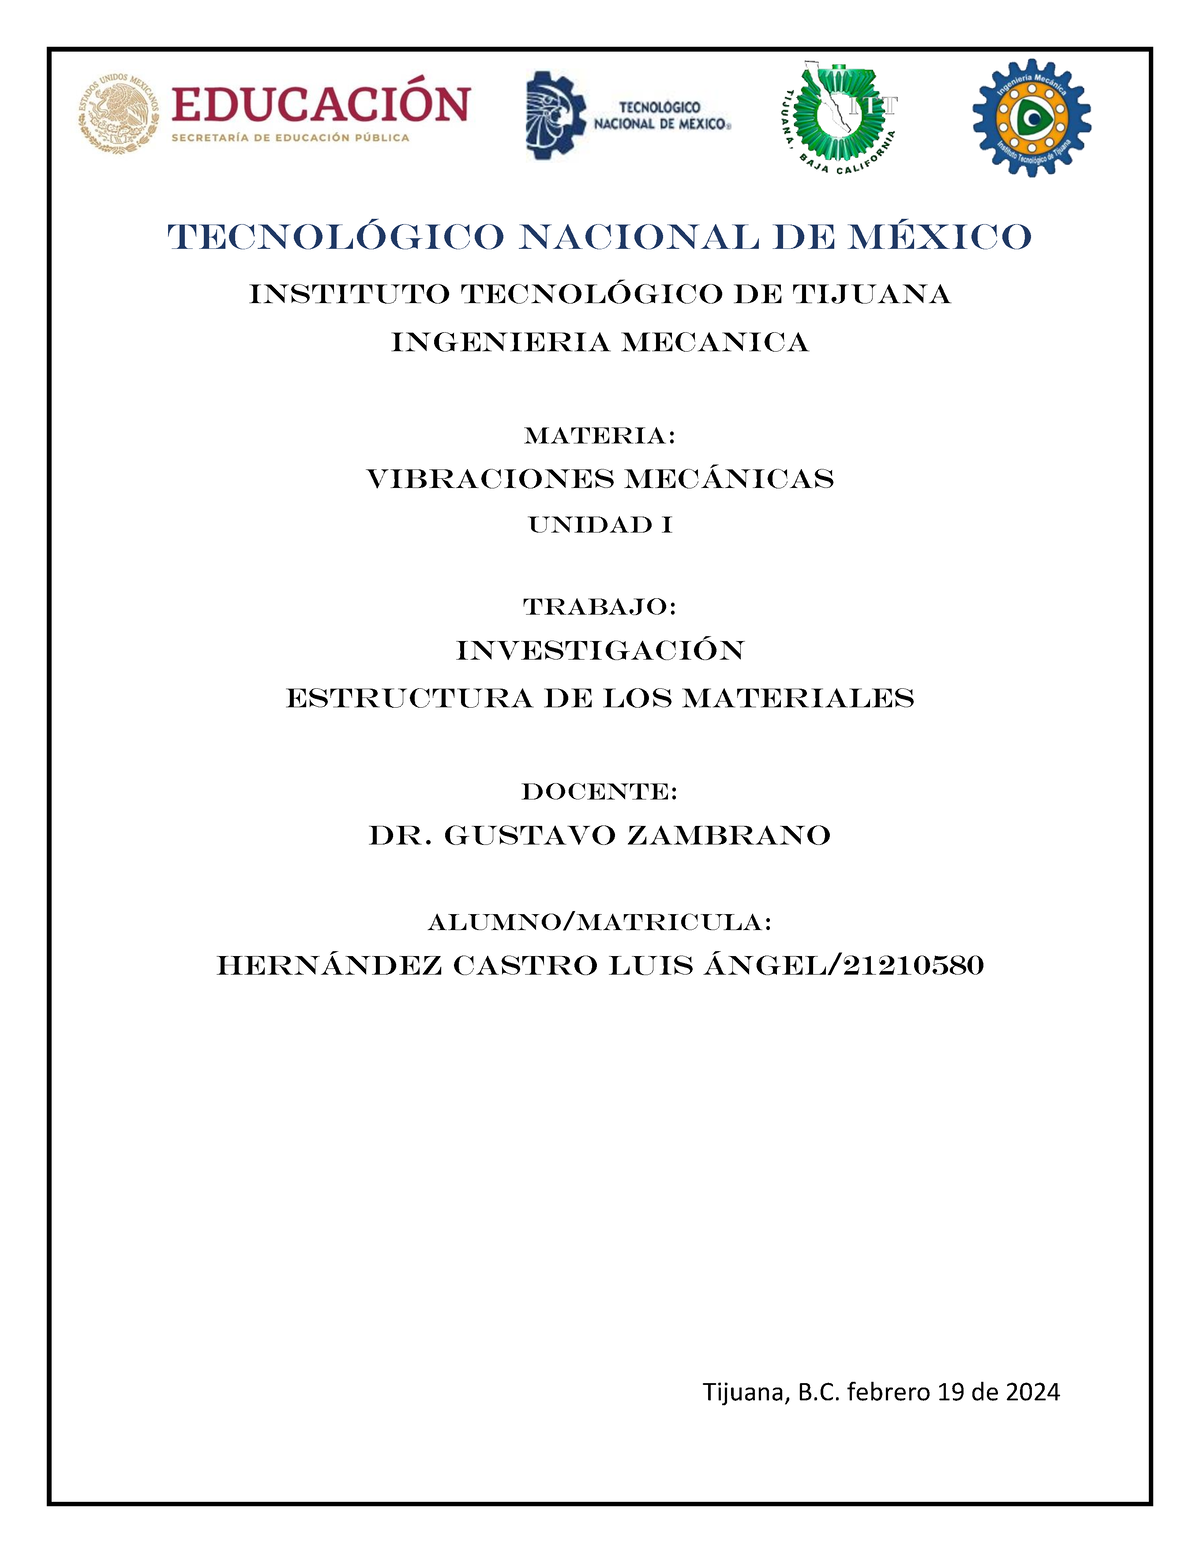 Investigación vibraciones - Tecnológico nacional de México Instituto ...